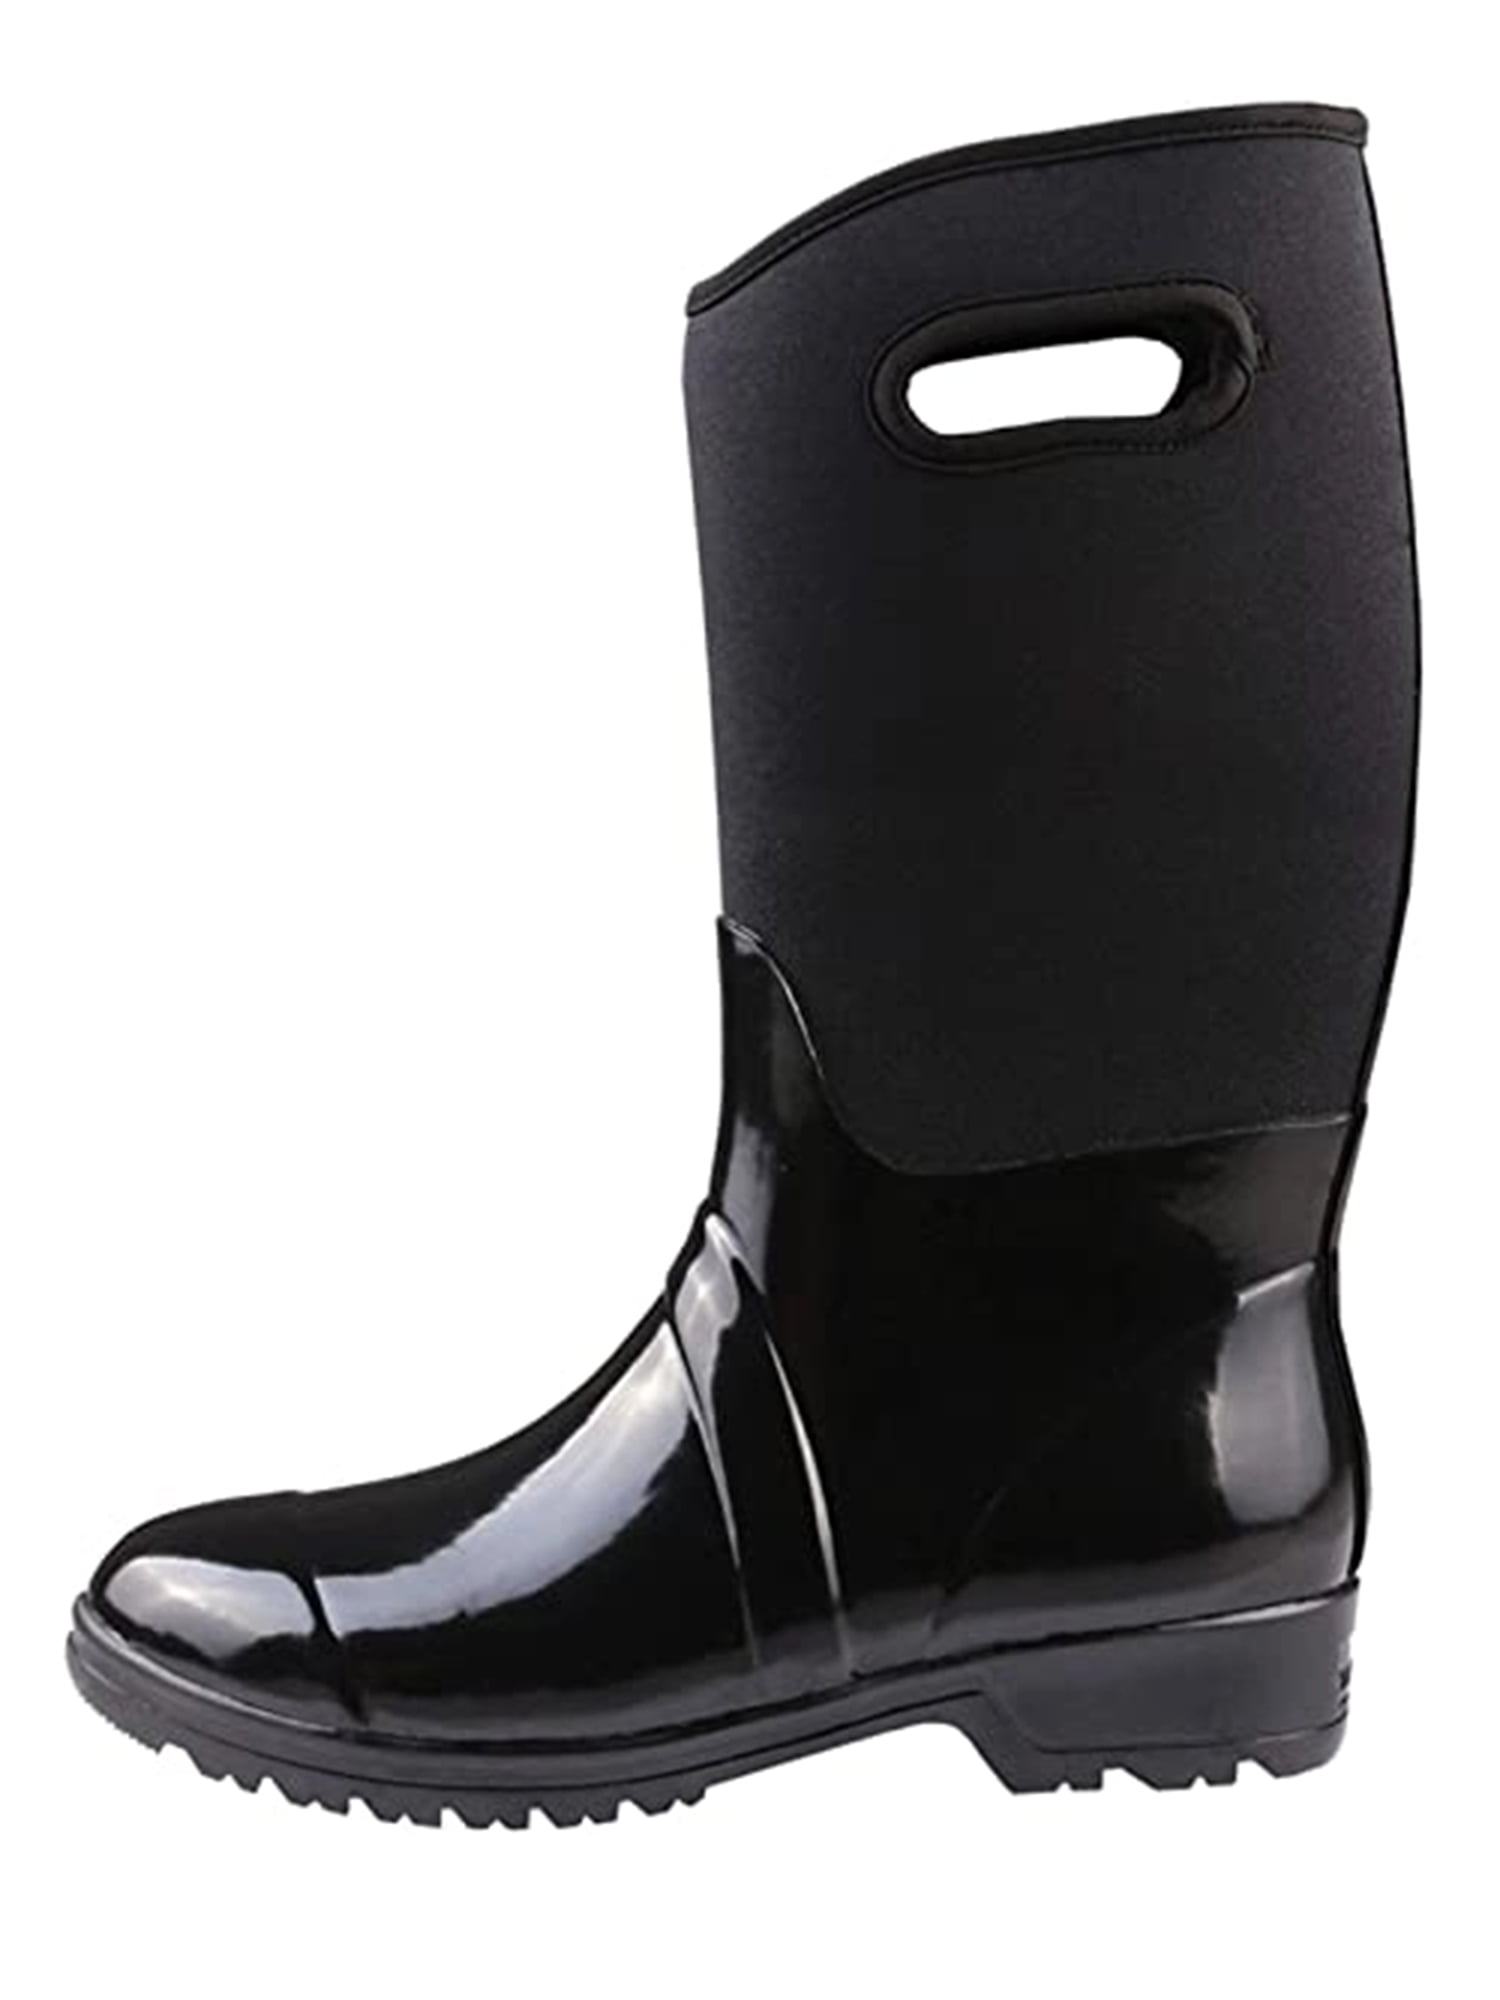 Slip-Resistant Women Rain Boots Fashion Neoprene Waterproof Boots ...